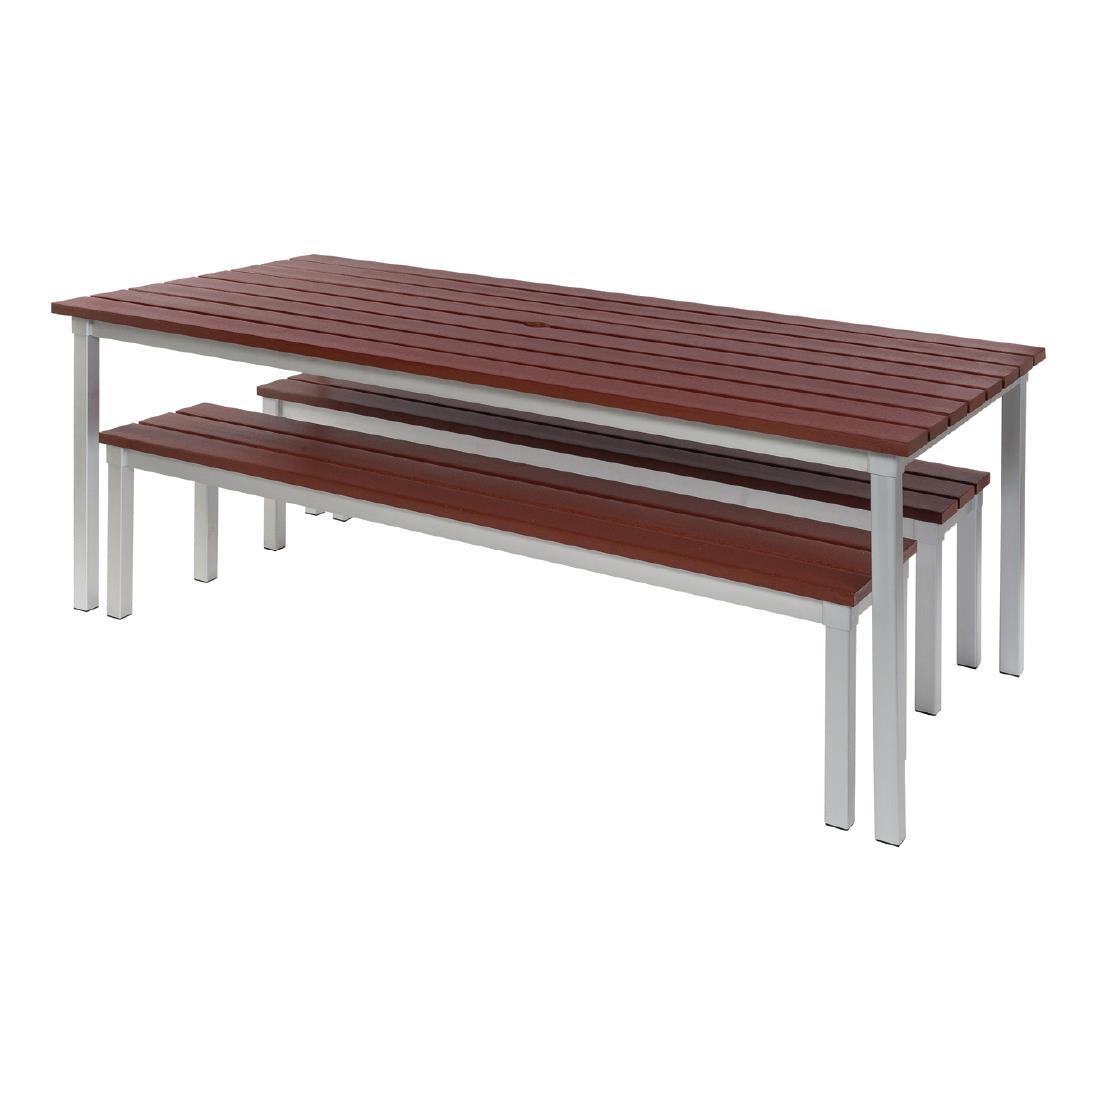 Enviro Outdoor Walnut Effect Faux Wood Table 1800mm - CK810  - 3